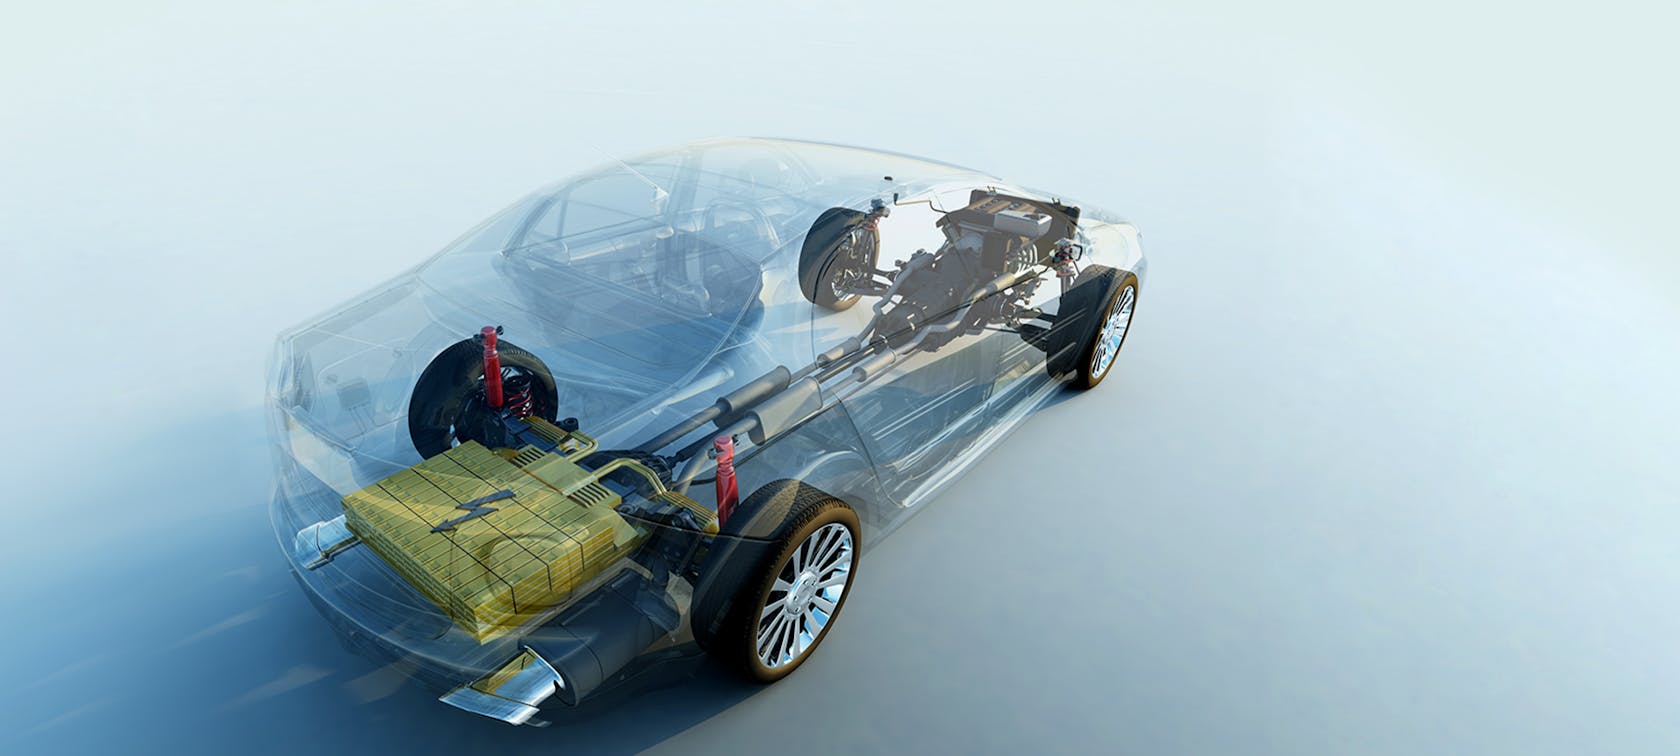 Un véhicule à propulsion électrique et à carrosserie transparente traverse l'image en diagonale